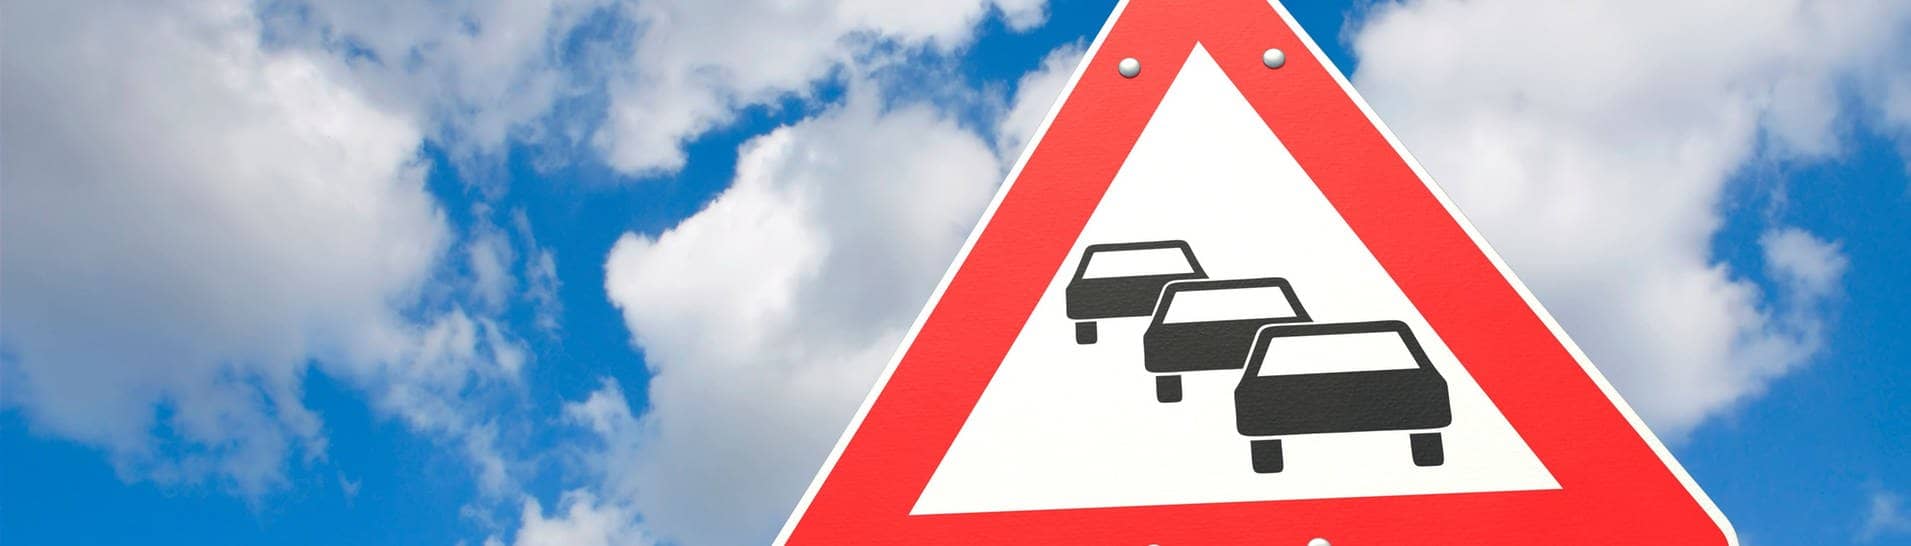 Straßenschild vor blauem Himmel mit Autos, das auf einen Stau im Verkehr hinweist